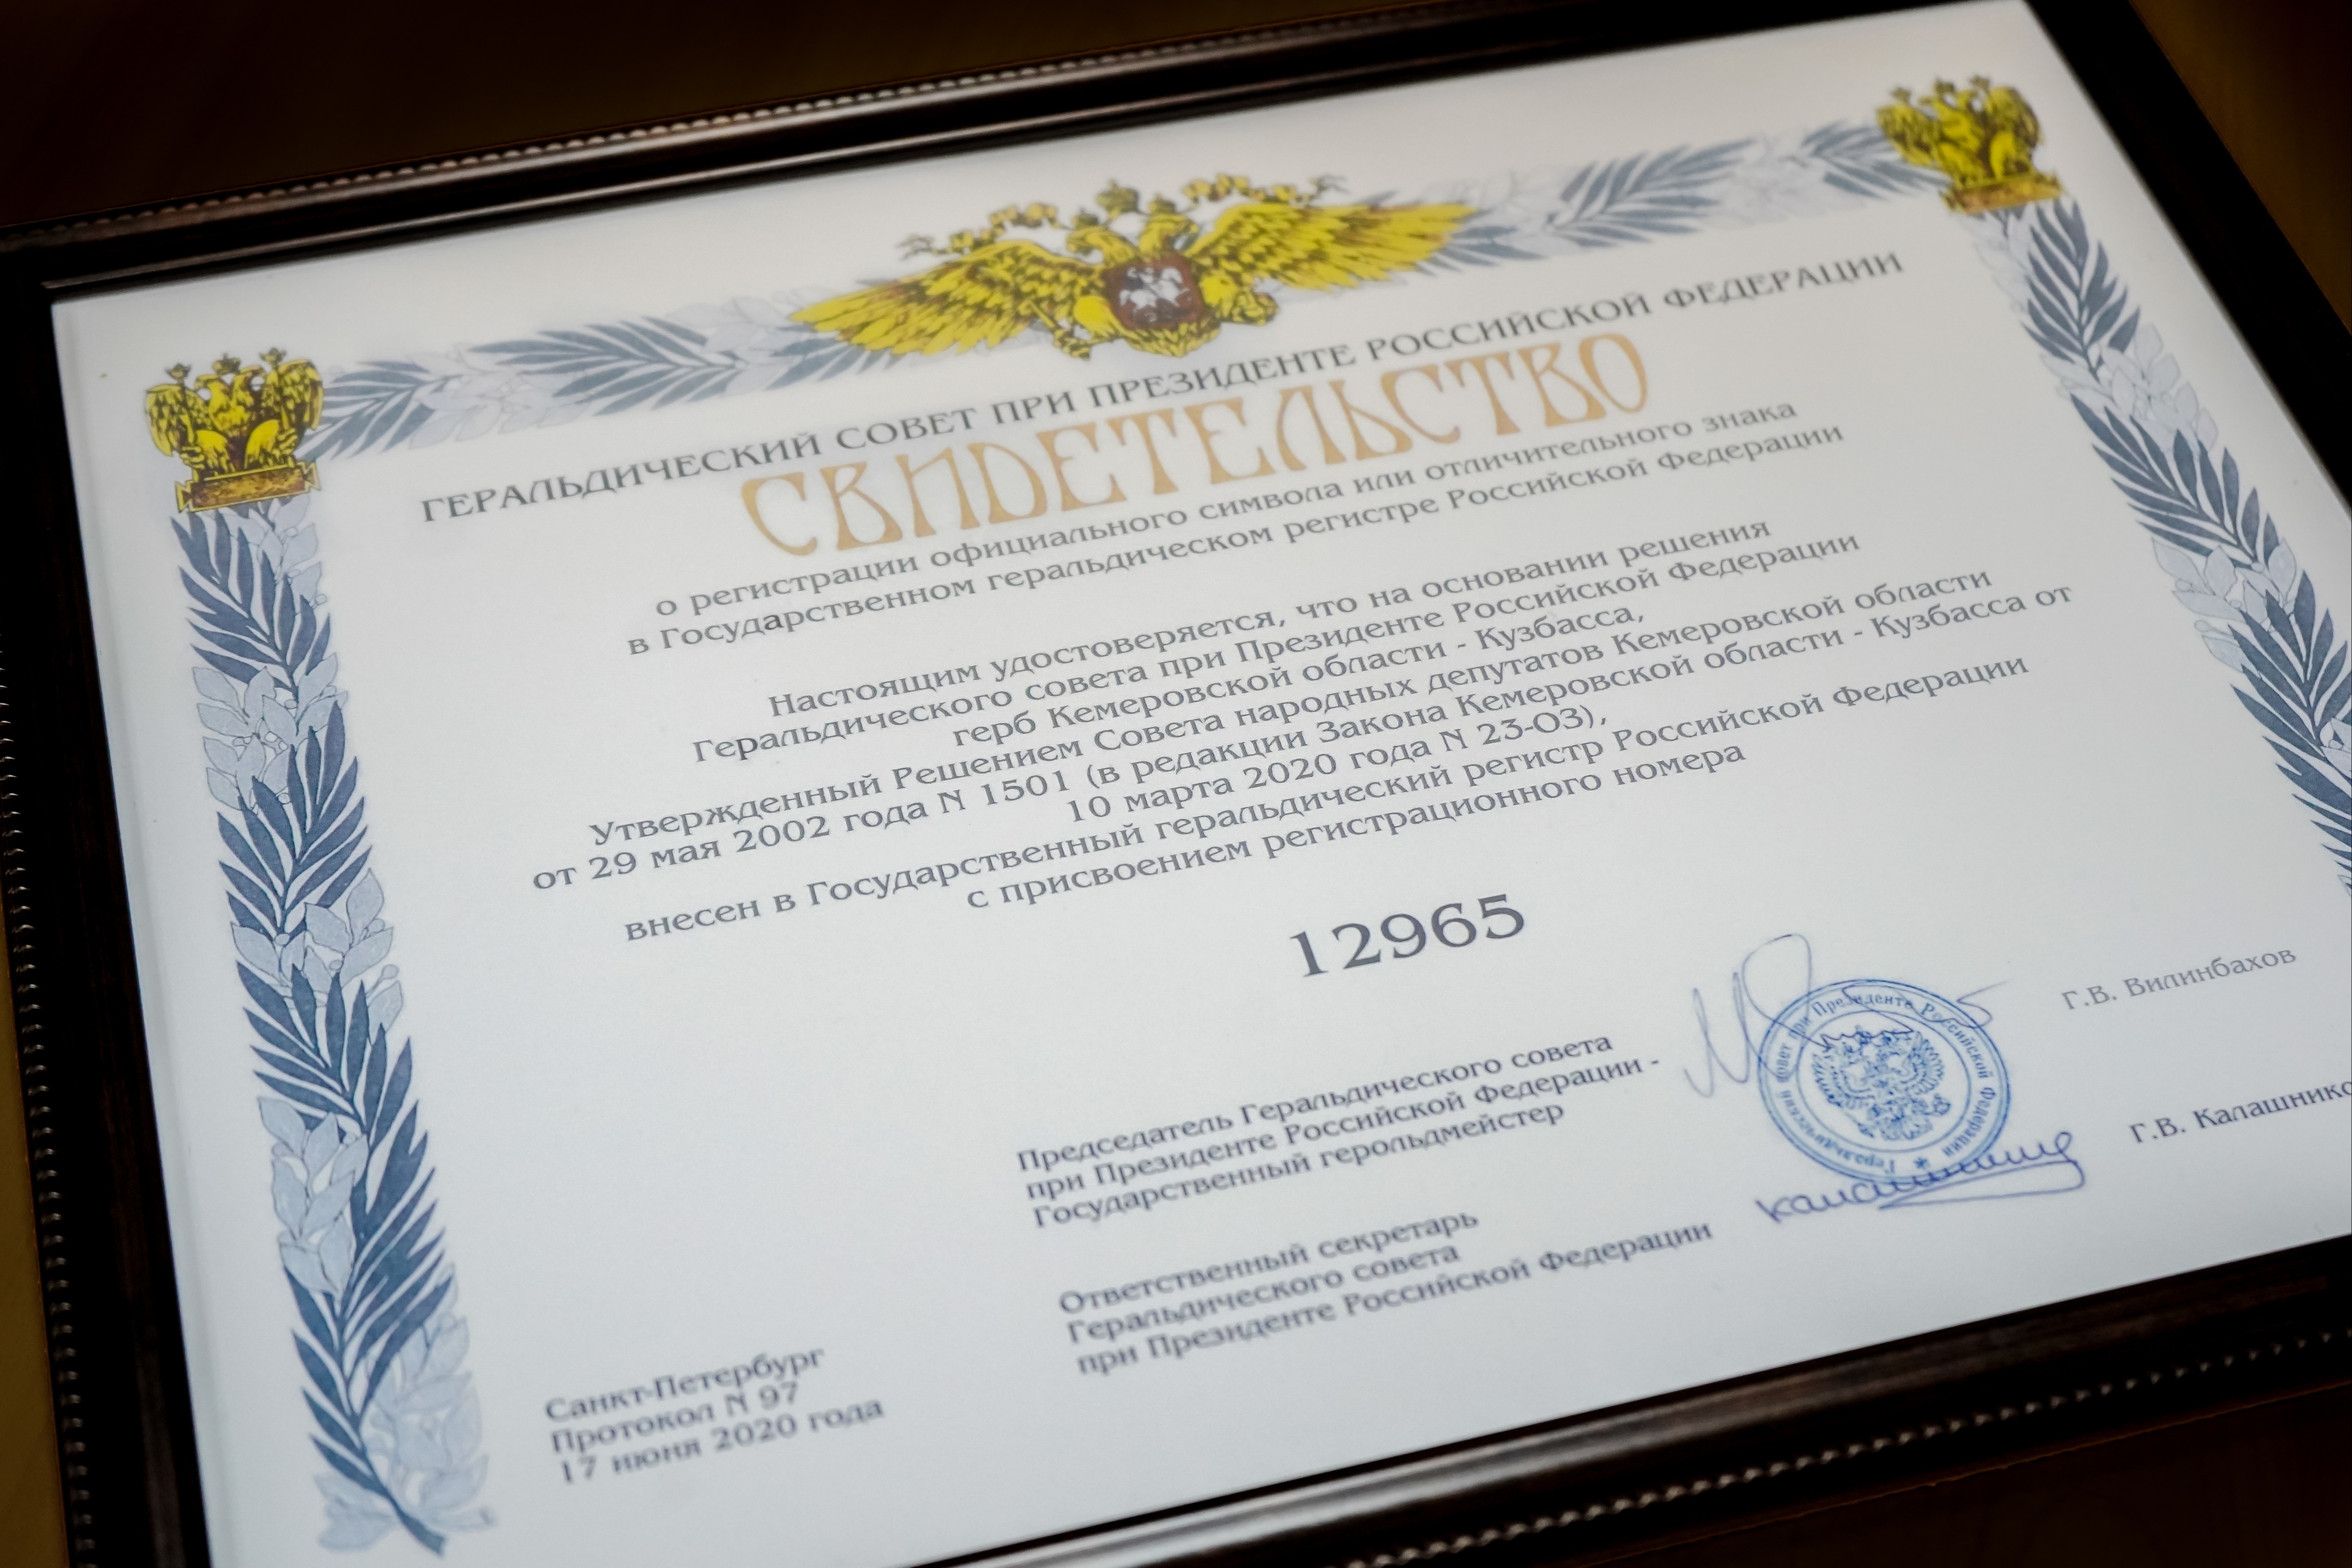 Герб и флаг Кузбасса внесены в Государственный геральдический регистр